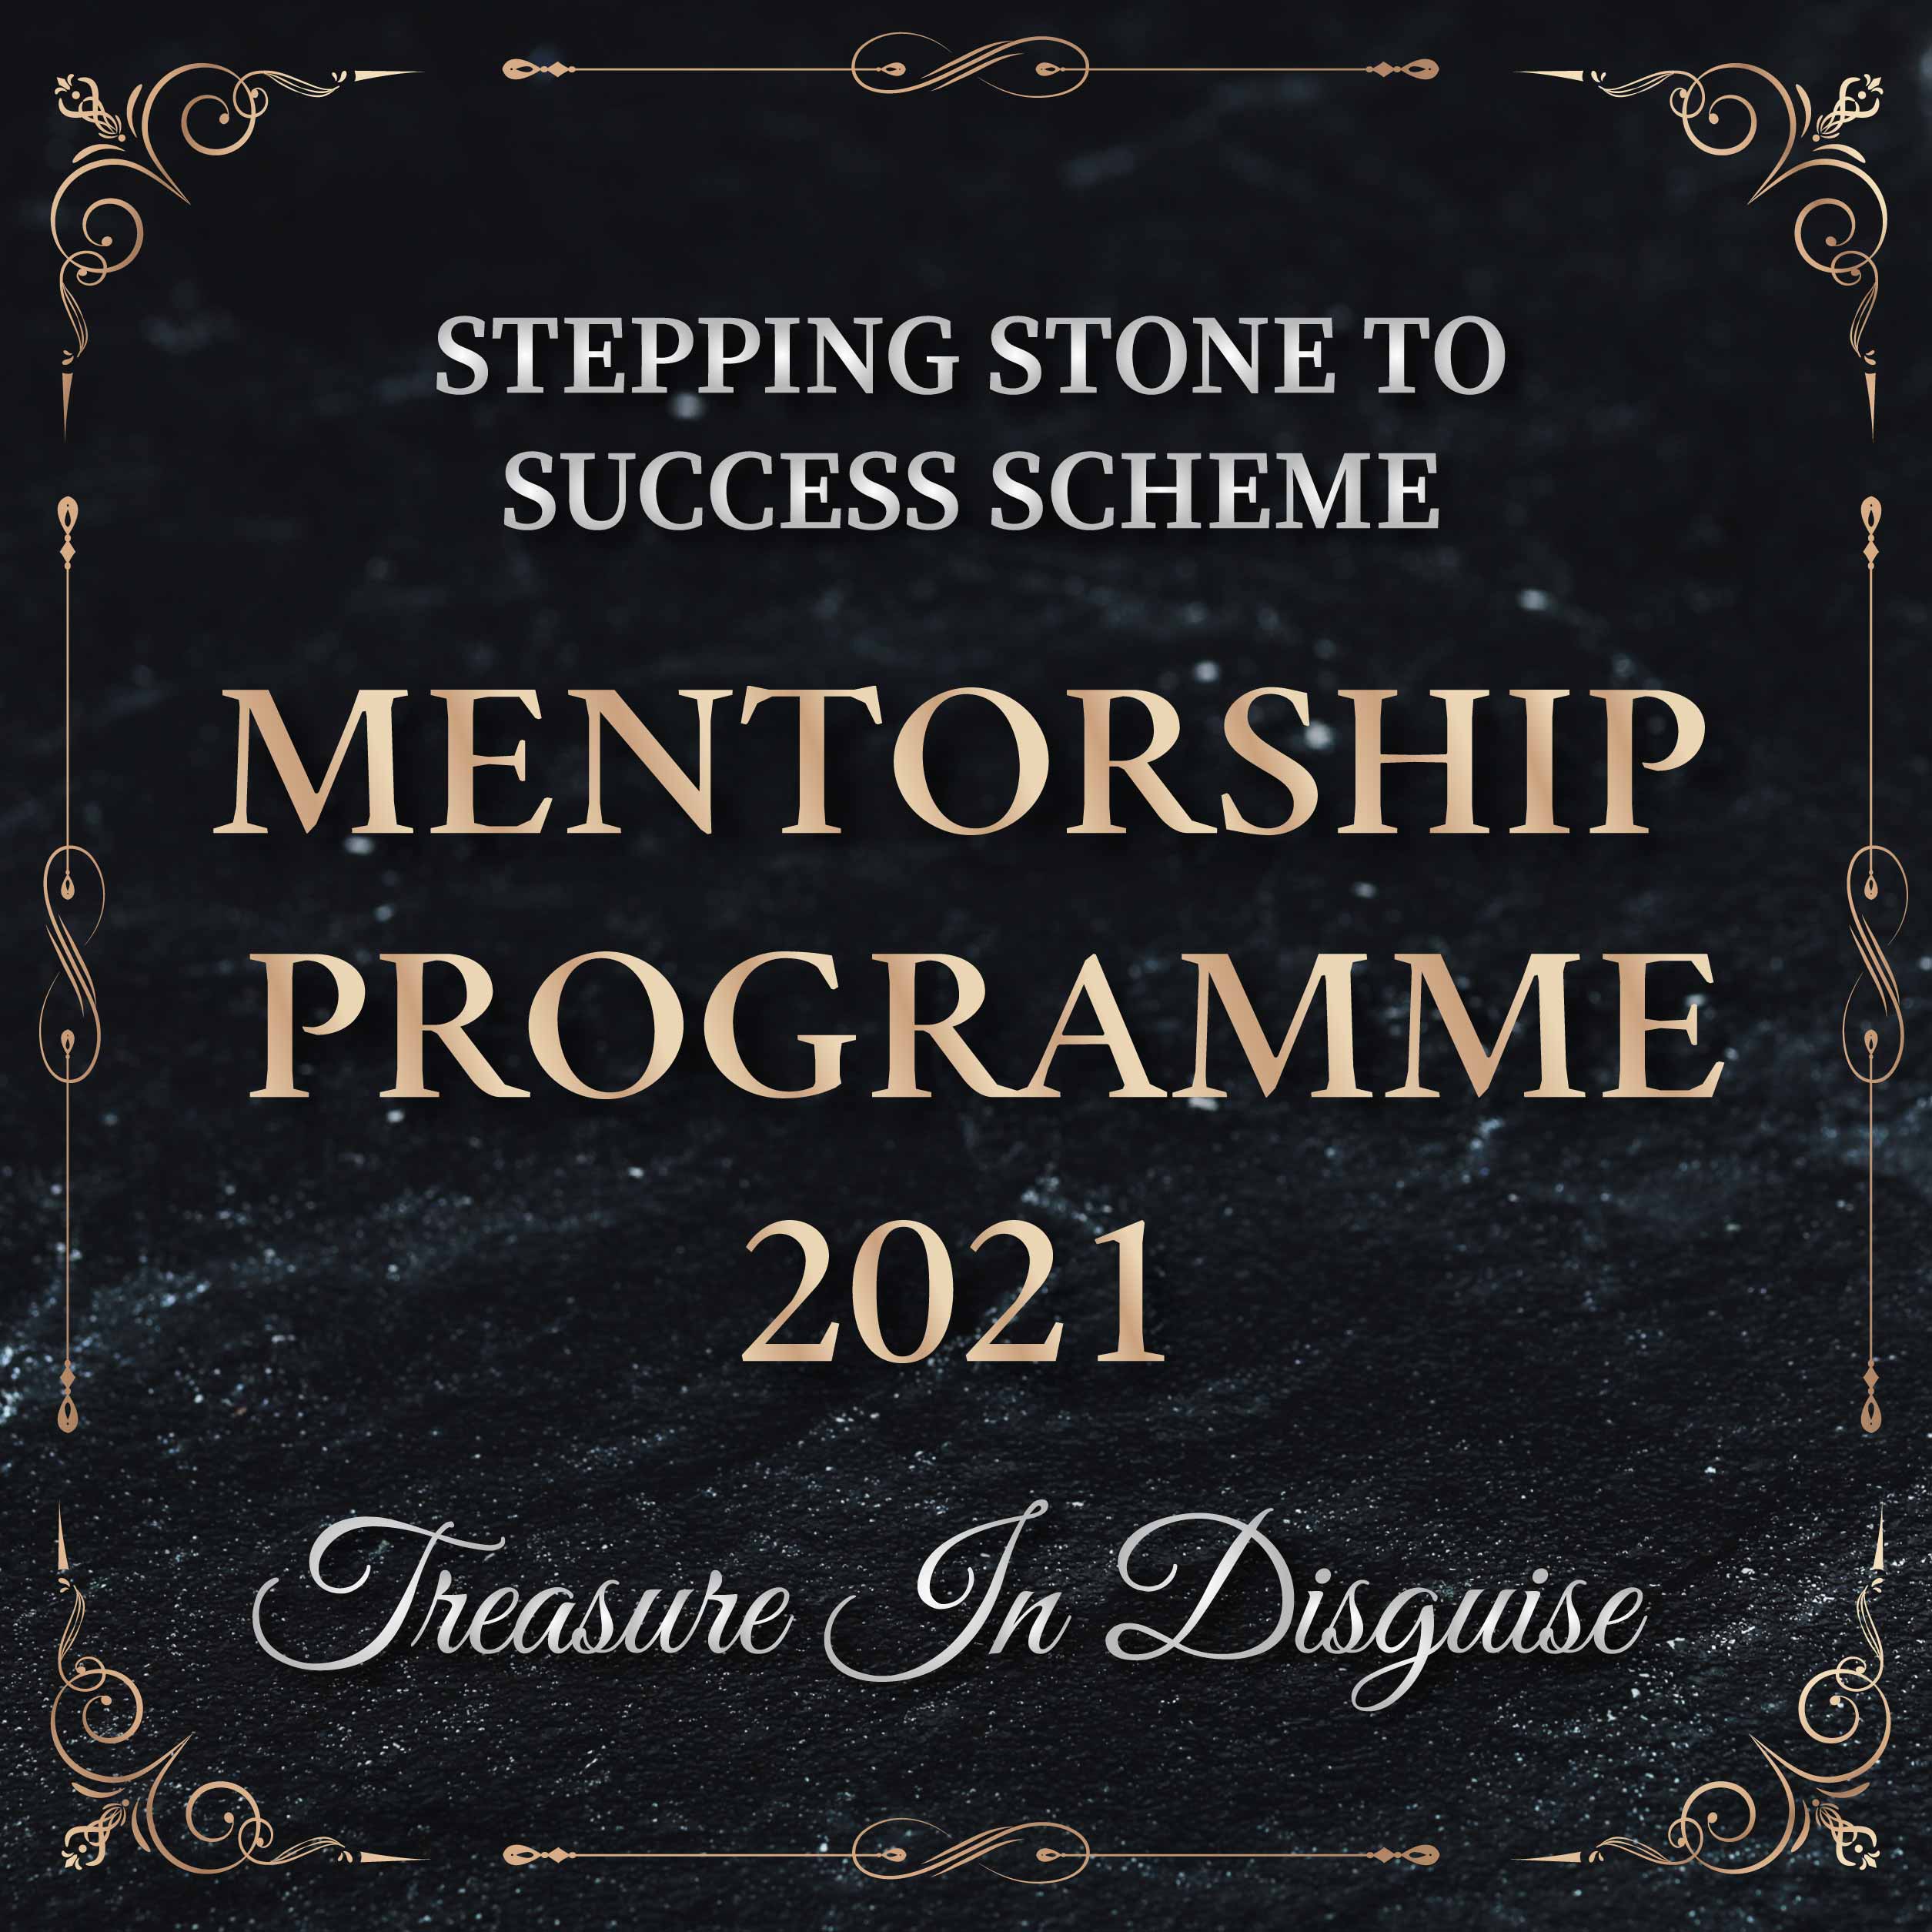 Mentorship Programme 2021